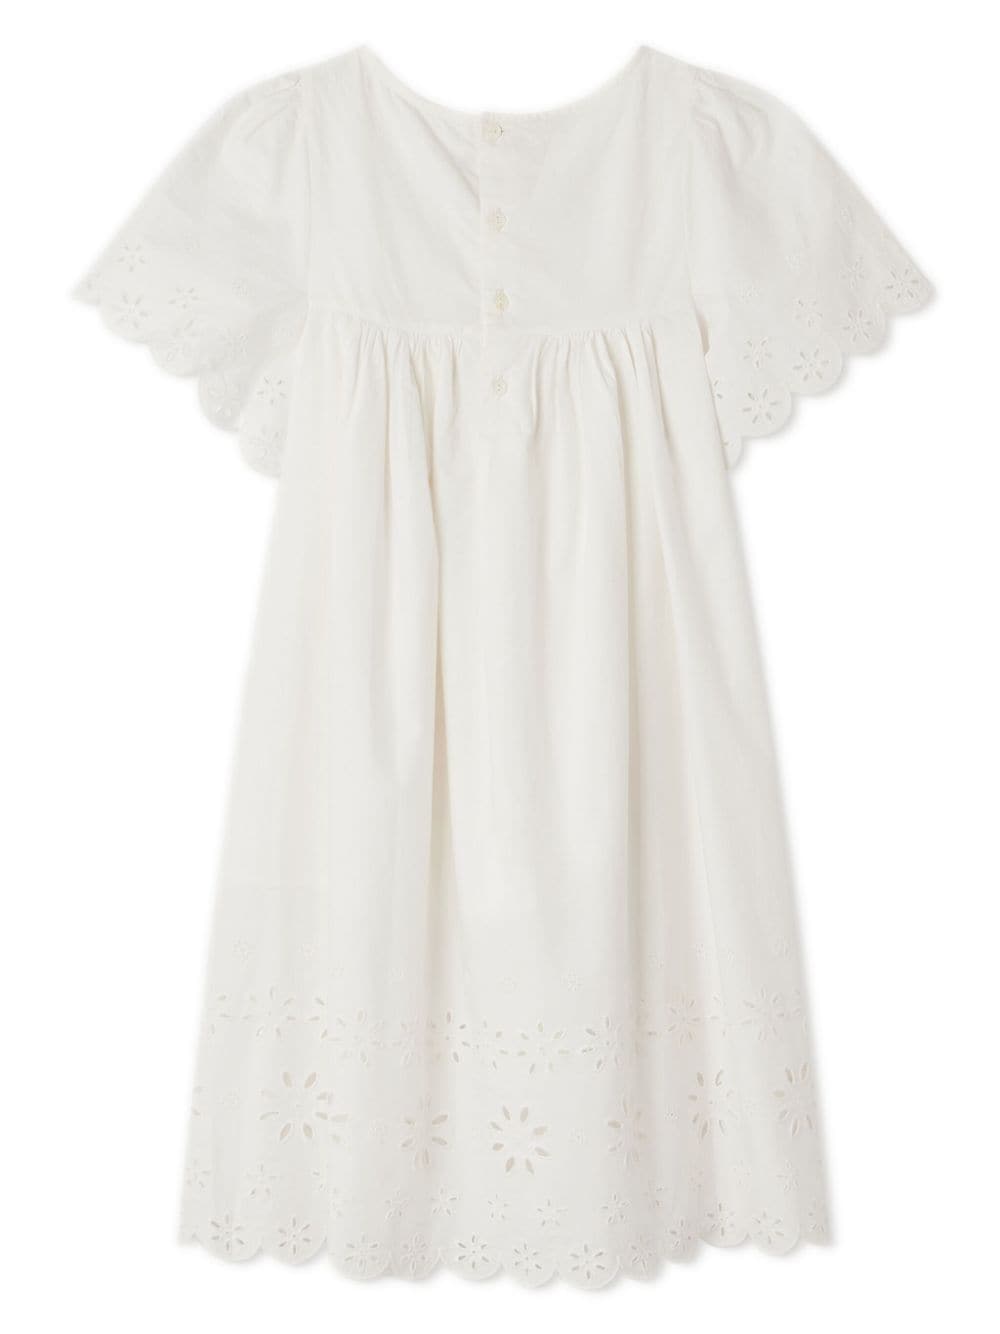 'Robe Francesca' dress